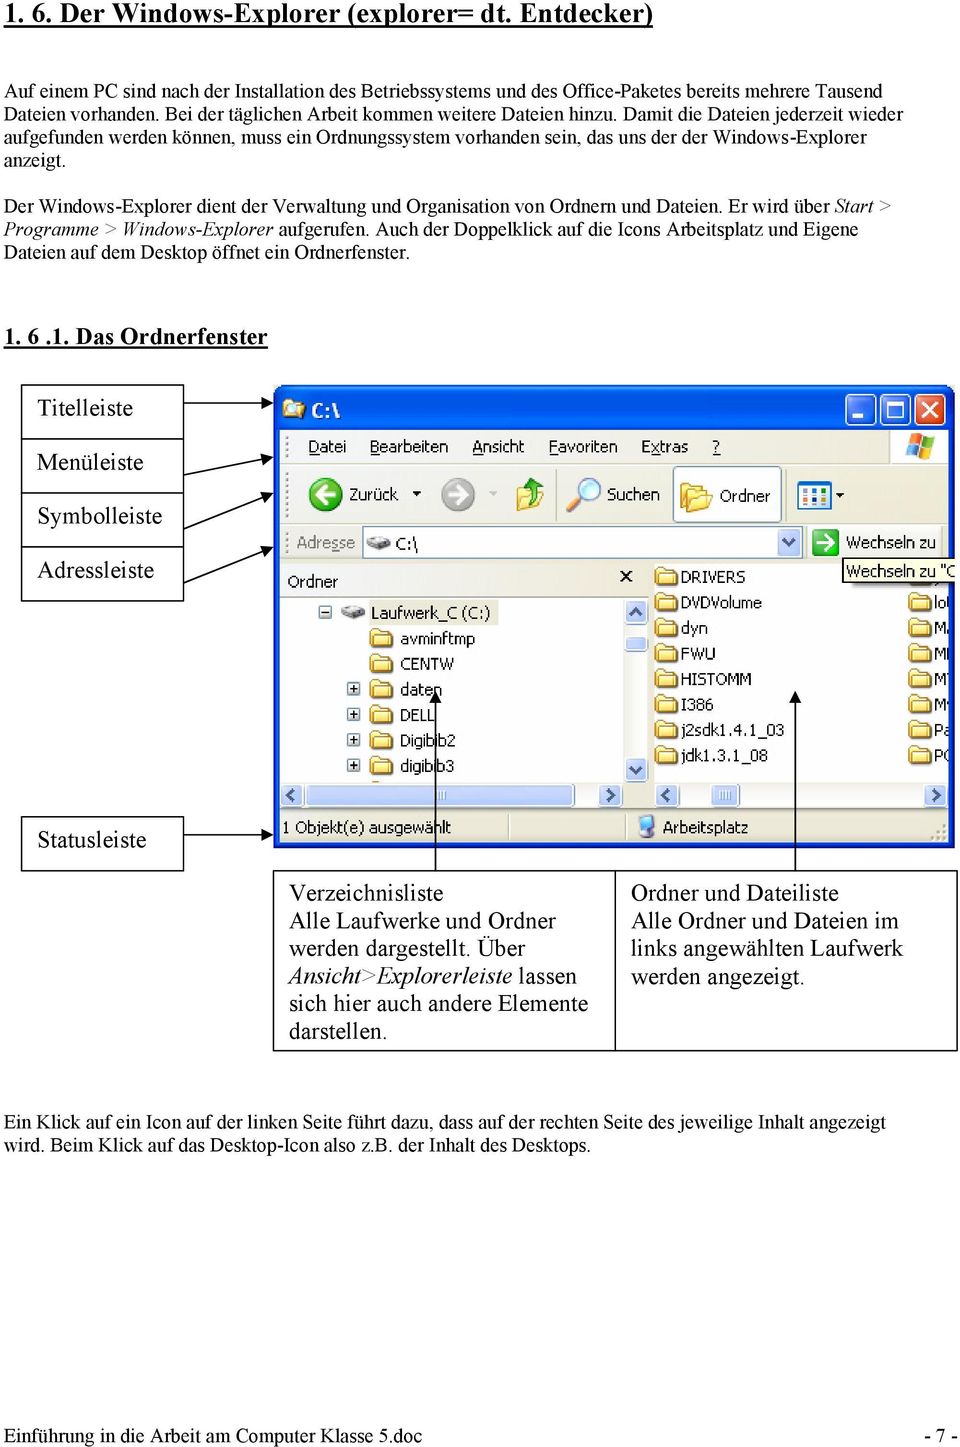 Der Windows-Explorer dient der Verwaltung und Organisation von Ordnern und Dateien. Er wird über Start > Programme > Windows-Explorer aufgerufen.